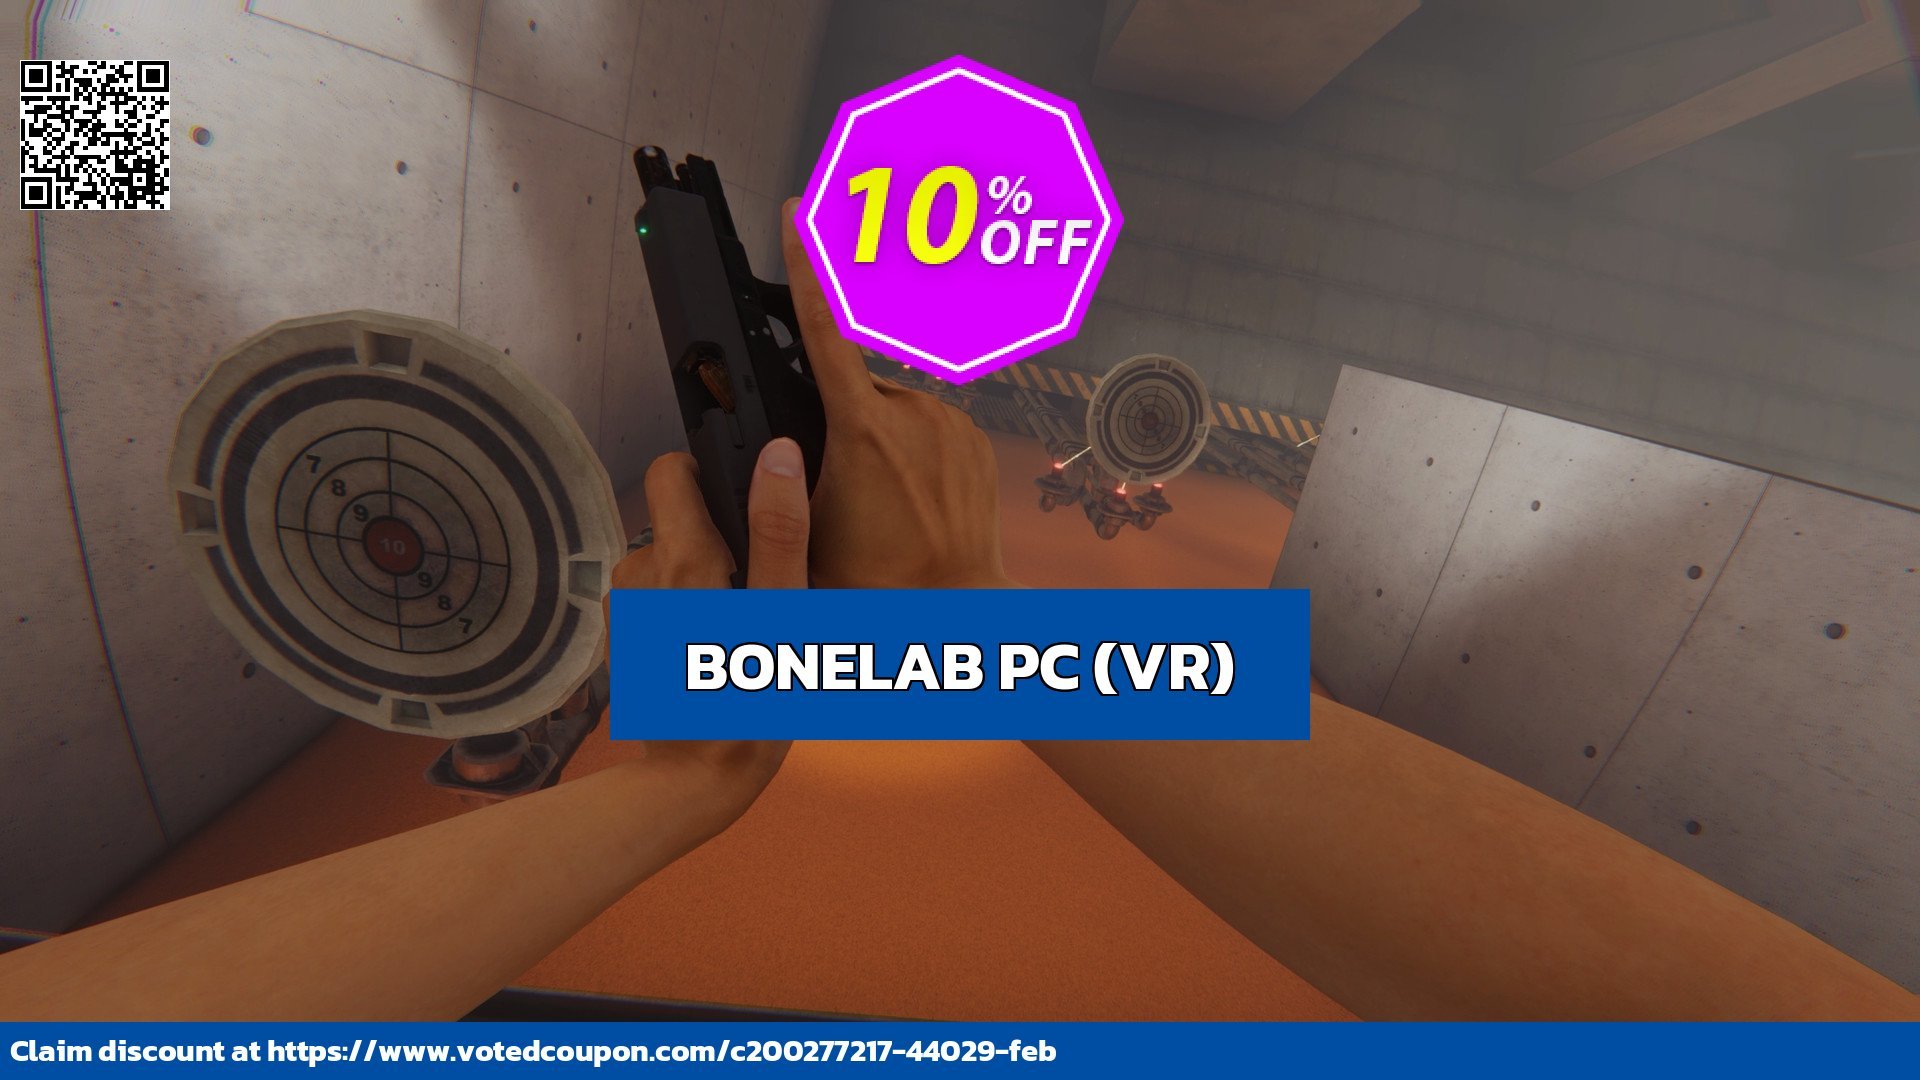 BONELAB PC, VR  Coupon, discount BONELAB PC (VR) Deal CDkeys. Promotion: BONELAB PC (VR) Exclusive Sale offer